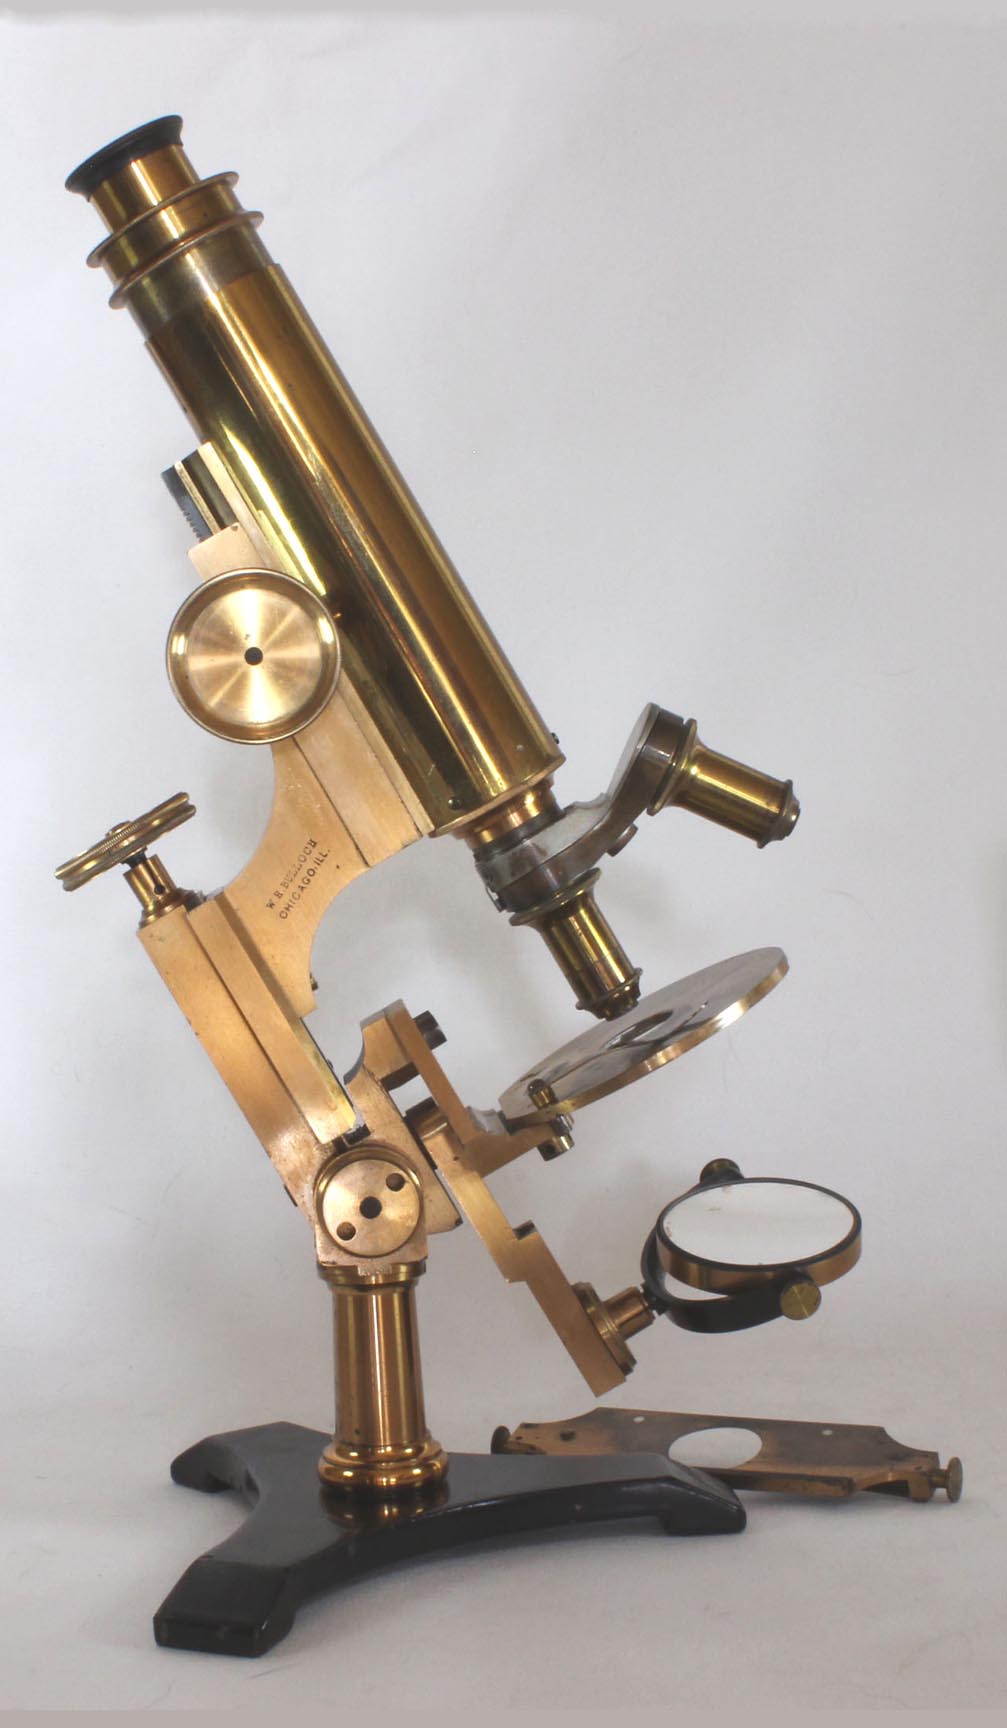 Bulloch Professional Microscope